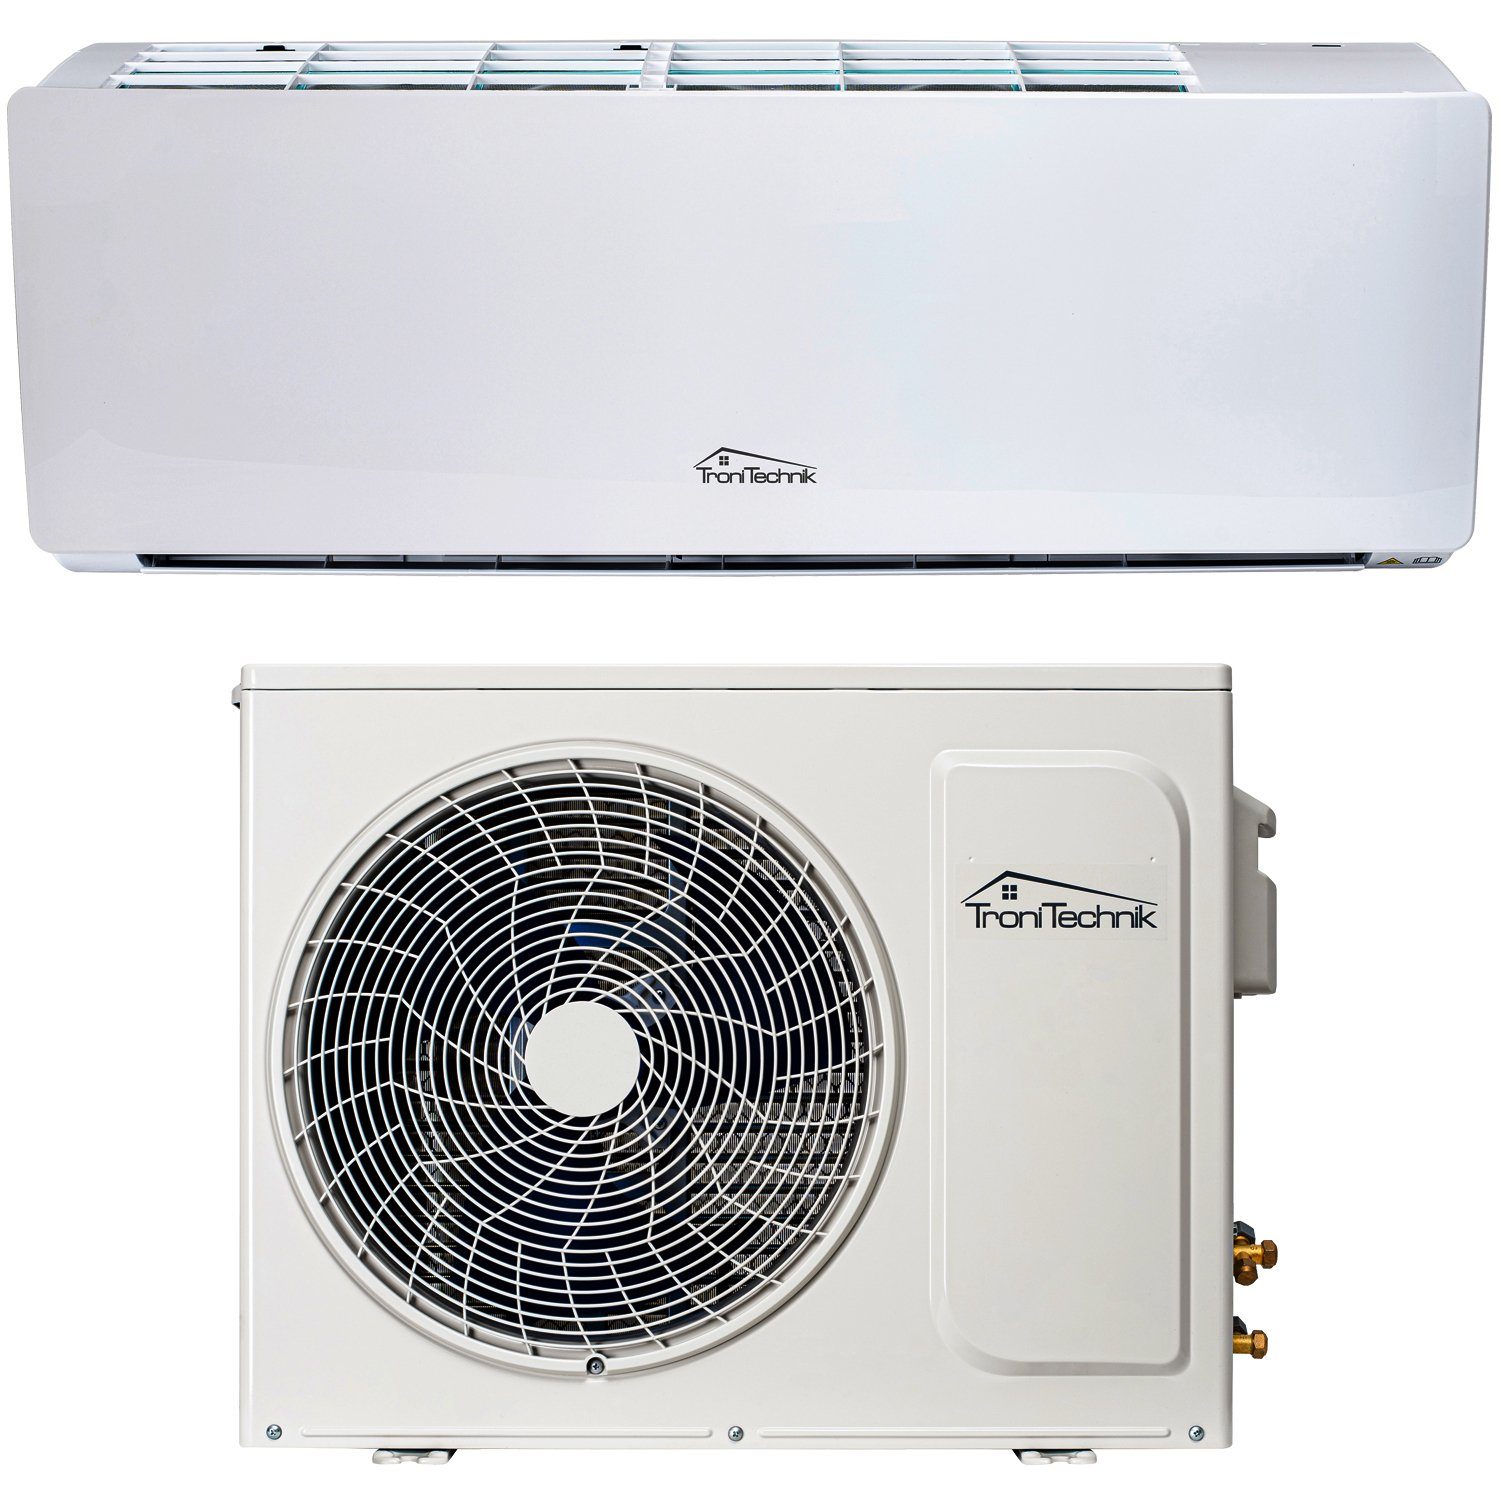 TroniTechnik Split-Klimagerät Reykir 9000 mit UV-C Filter, A++ EEK, mit  App-Steuerung,Raumthermostat, Kühlung,Heizung,Ventilation (6-Stufen  Ventilator),Entfeuchtung